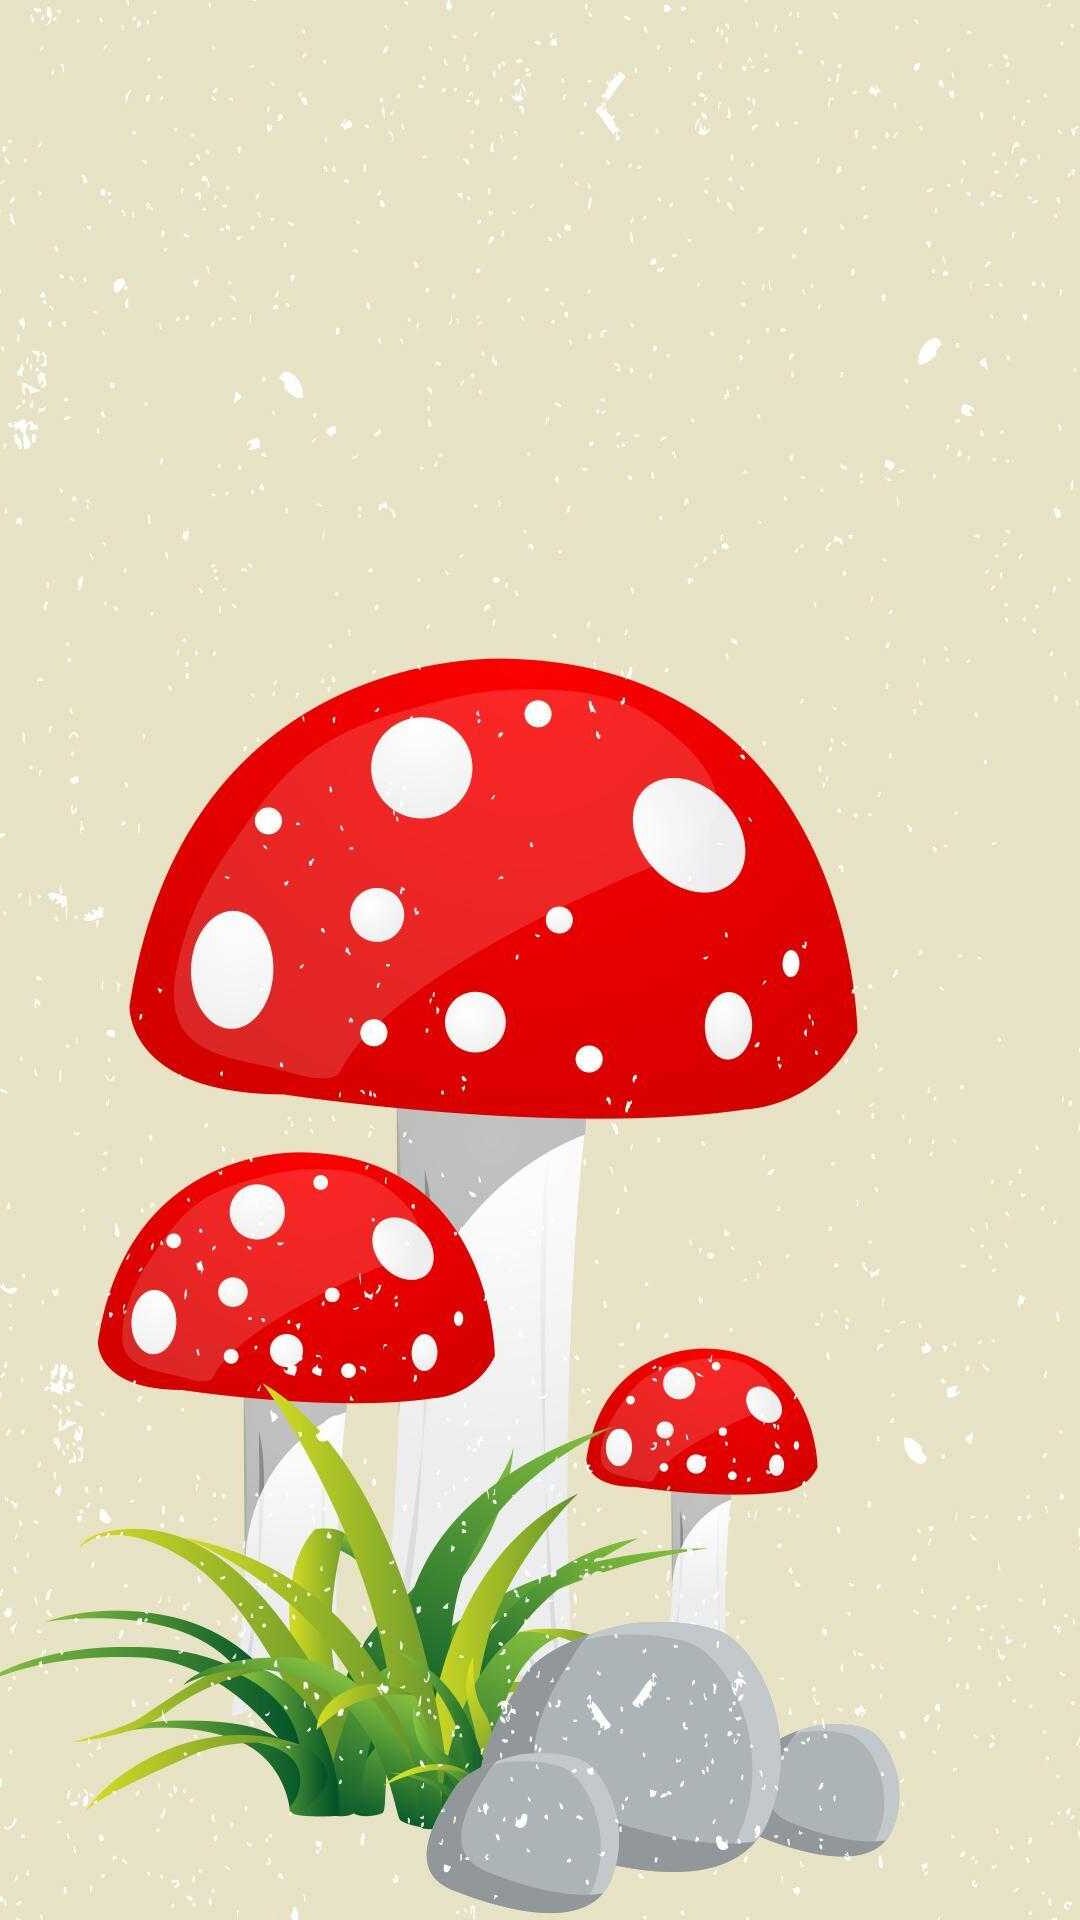 Mushroom Wallpaper For Your